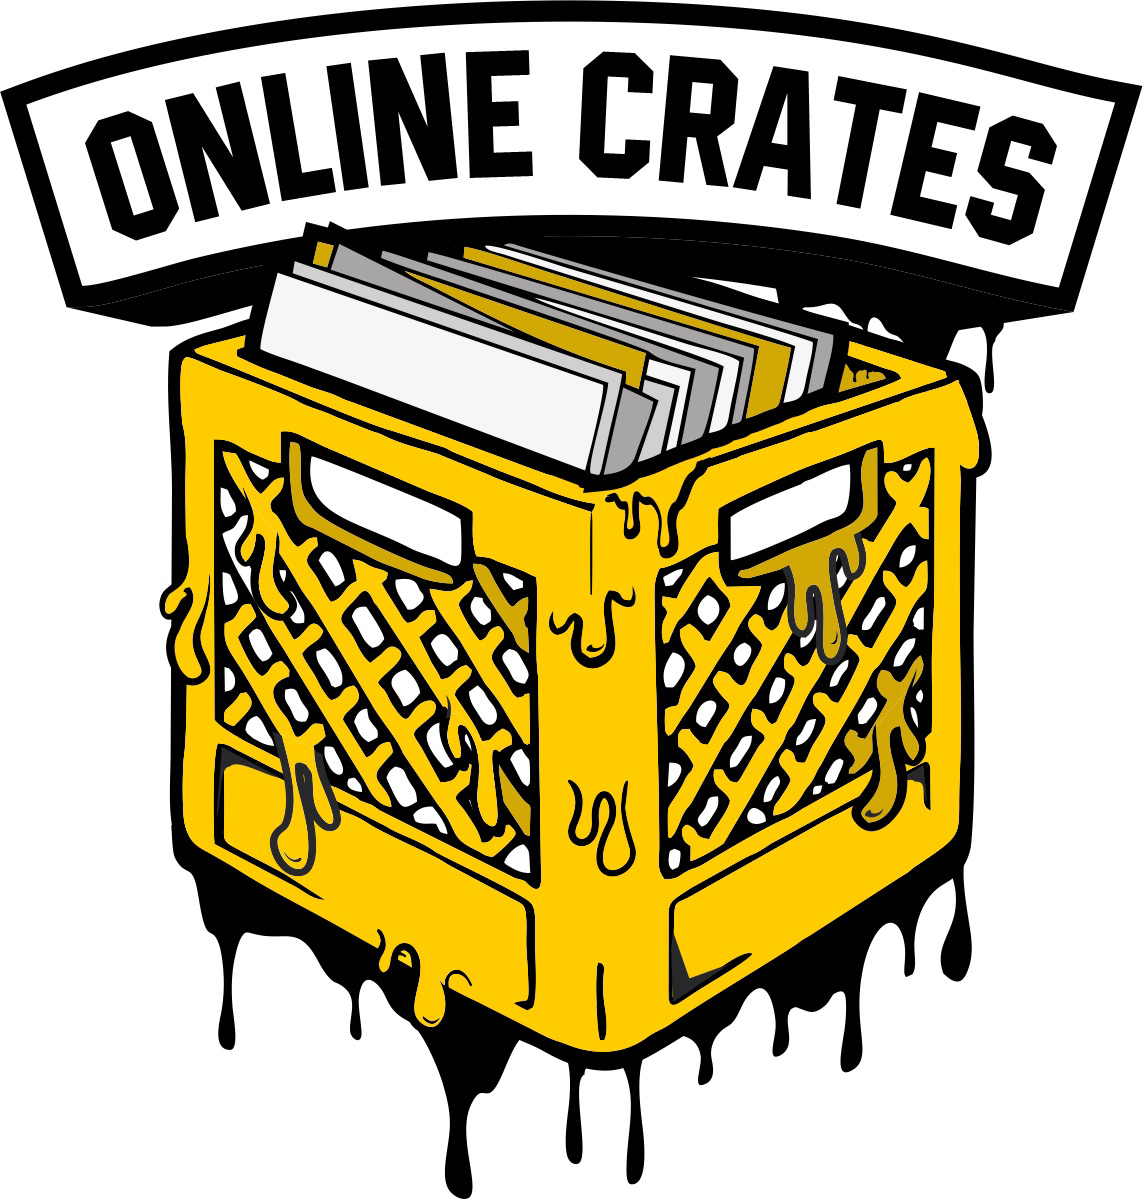 Online Crates